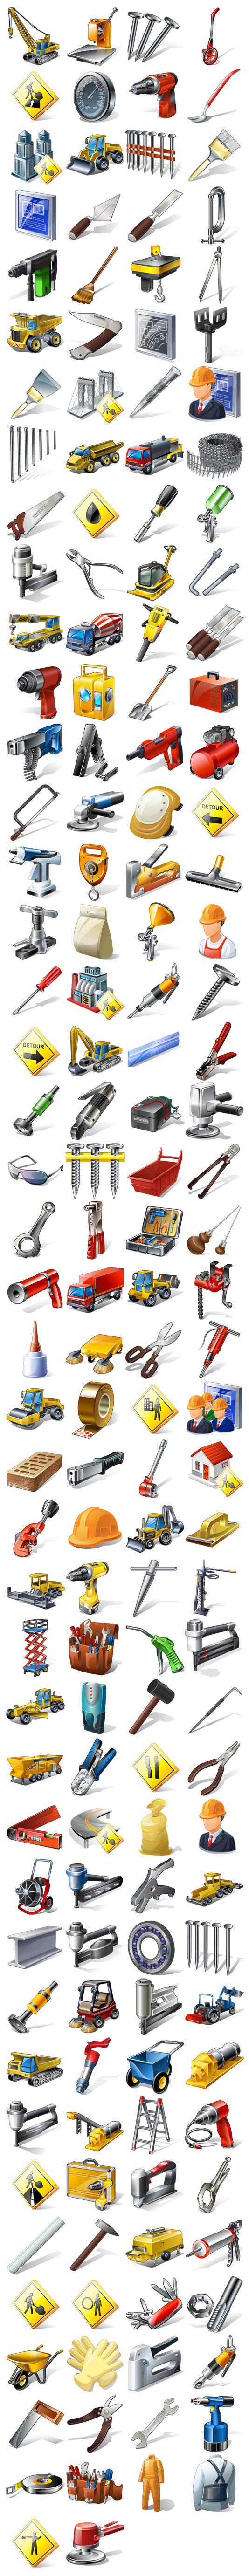 Оборудование, инструменты, люди и товары значок инжиниринг